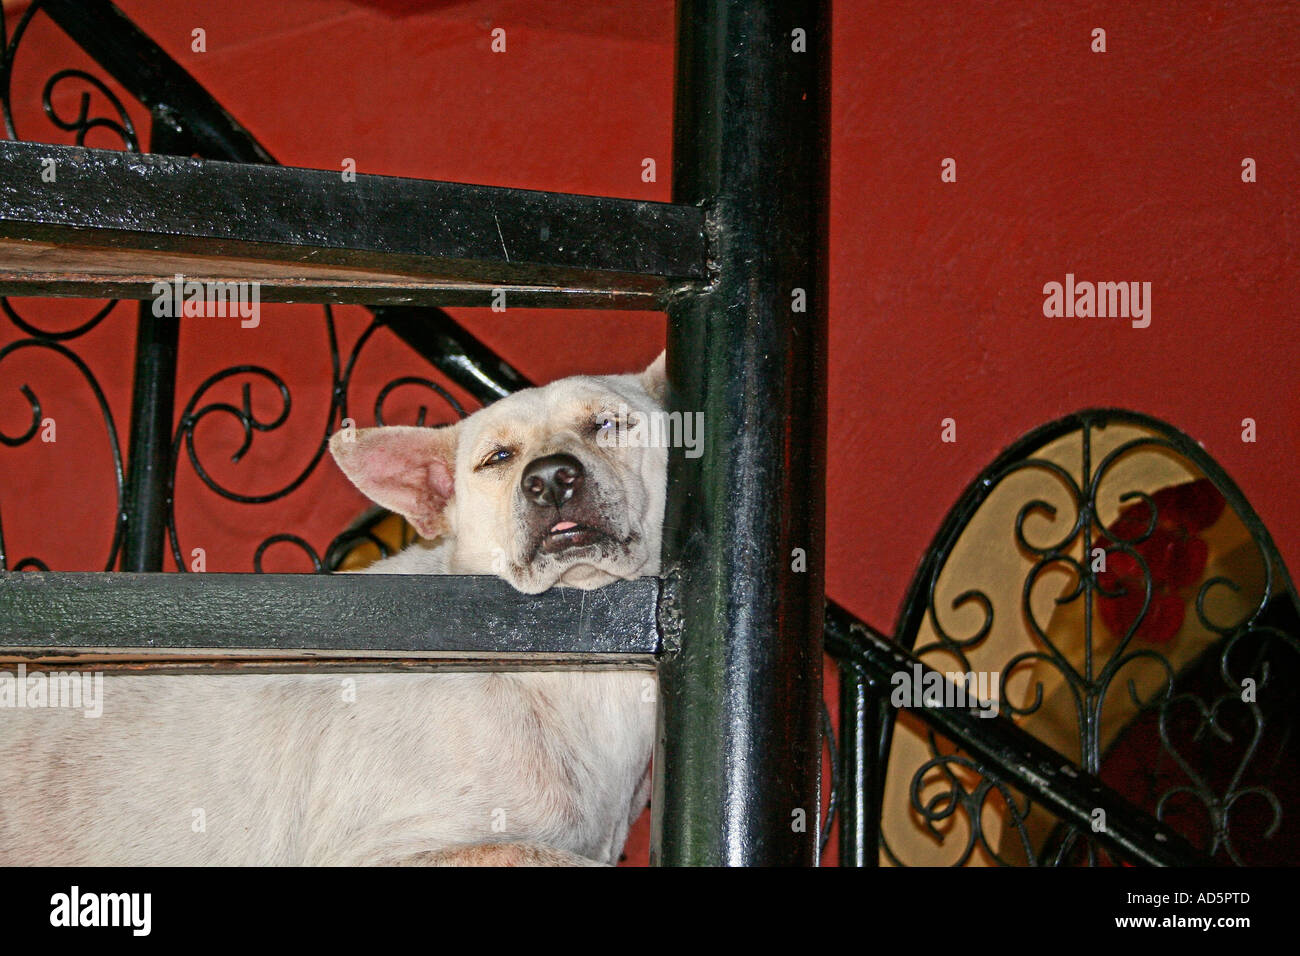 sleeping dog Thailand Stock Photo